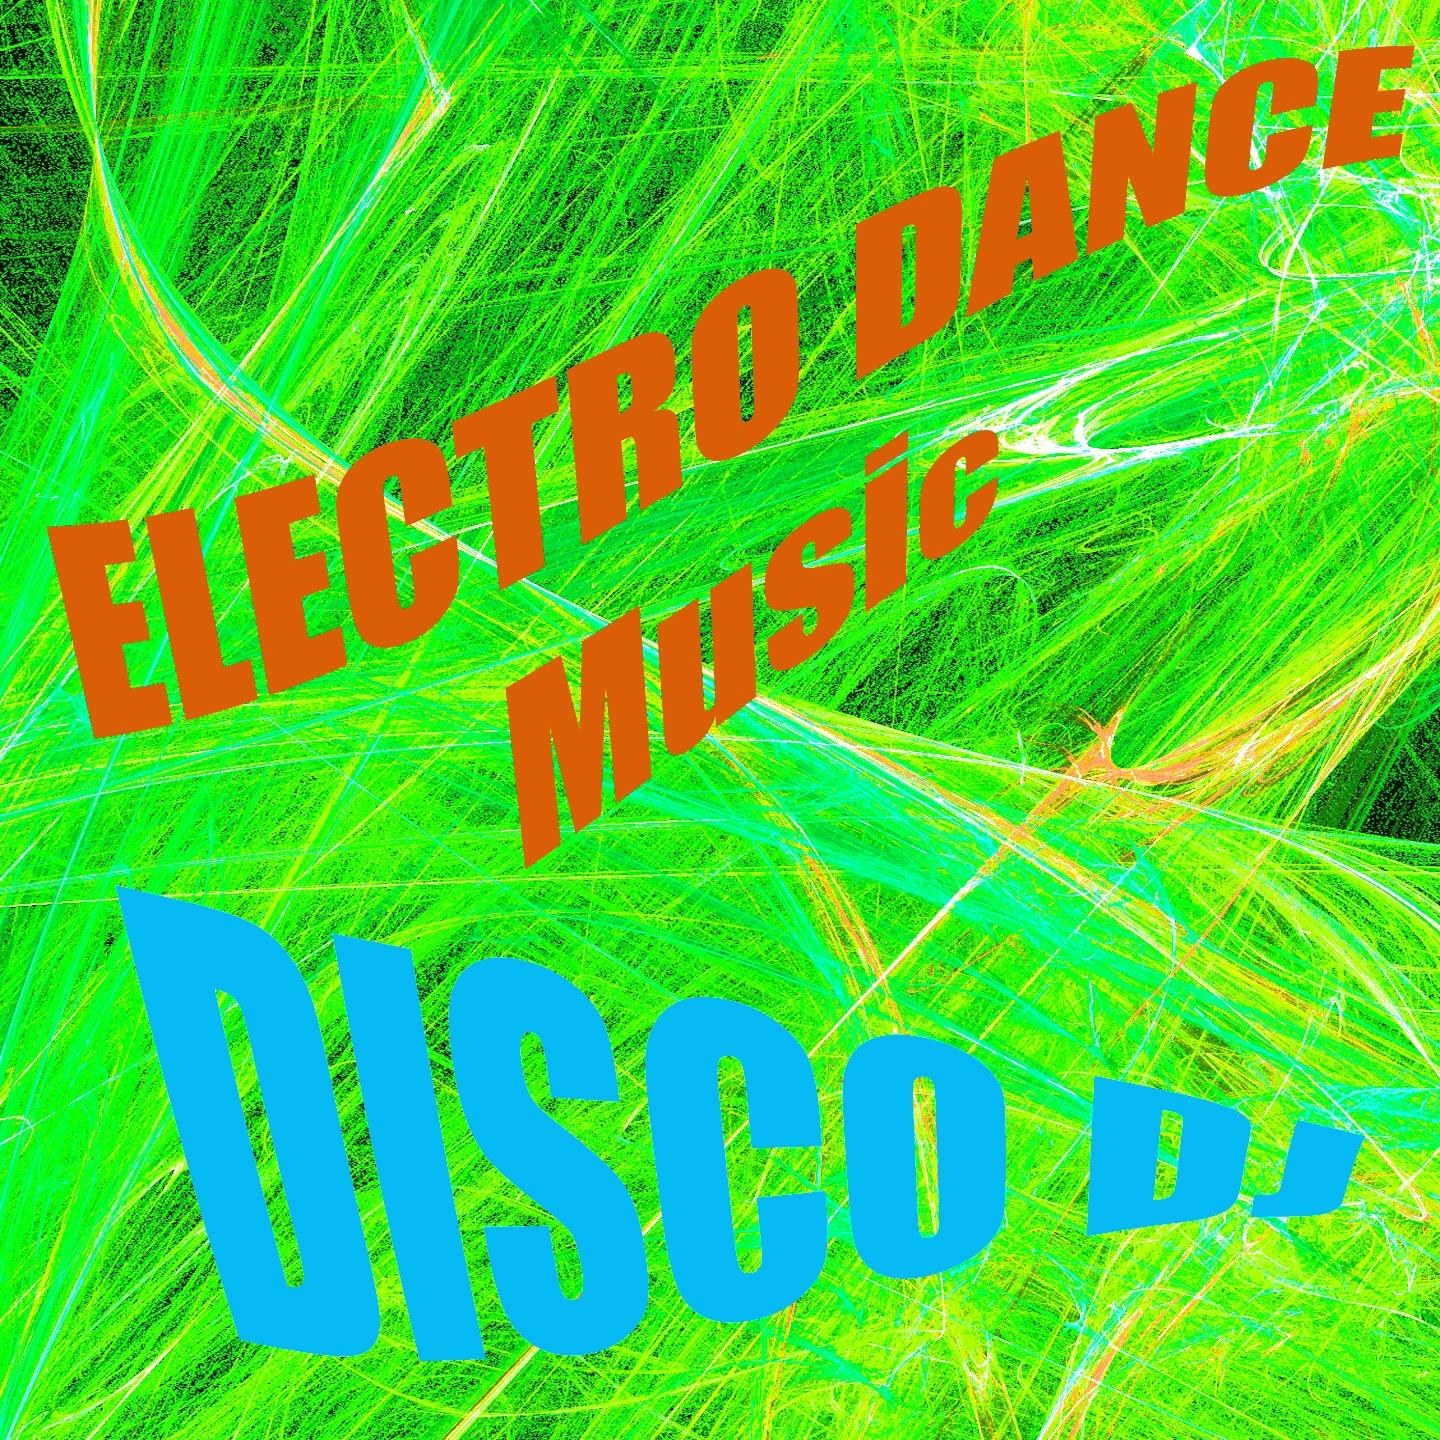 Постер альбома Electro Dance Music